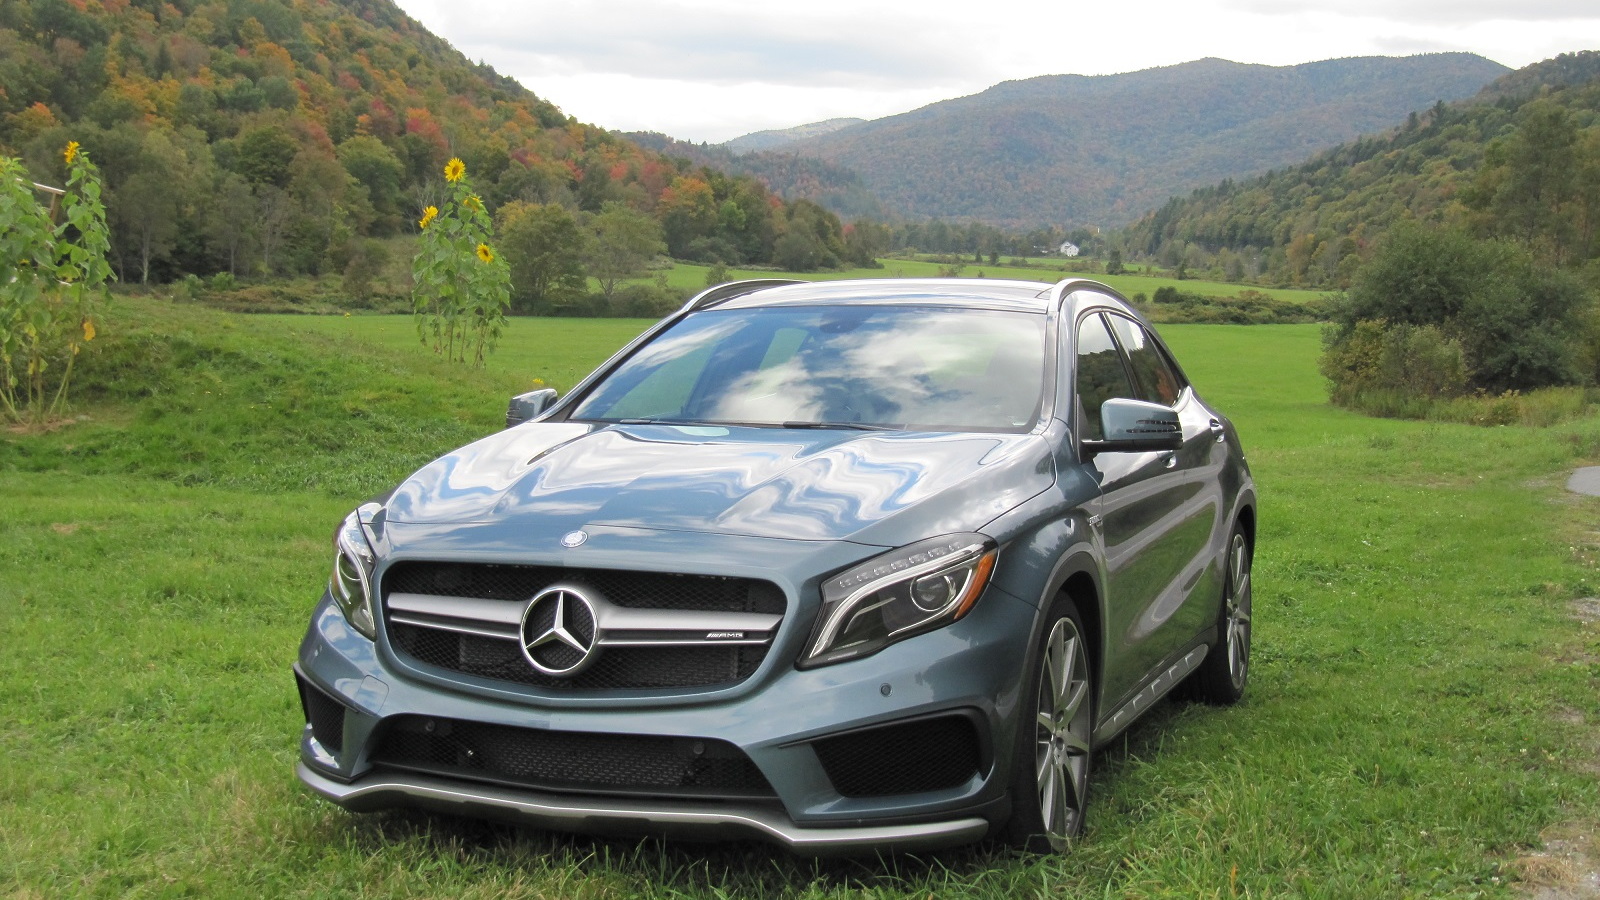 2015 Mercedes-Benz GLA 45 AMG, Vermont, Oct 2014